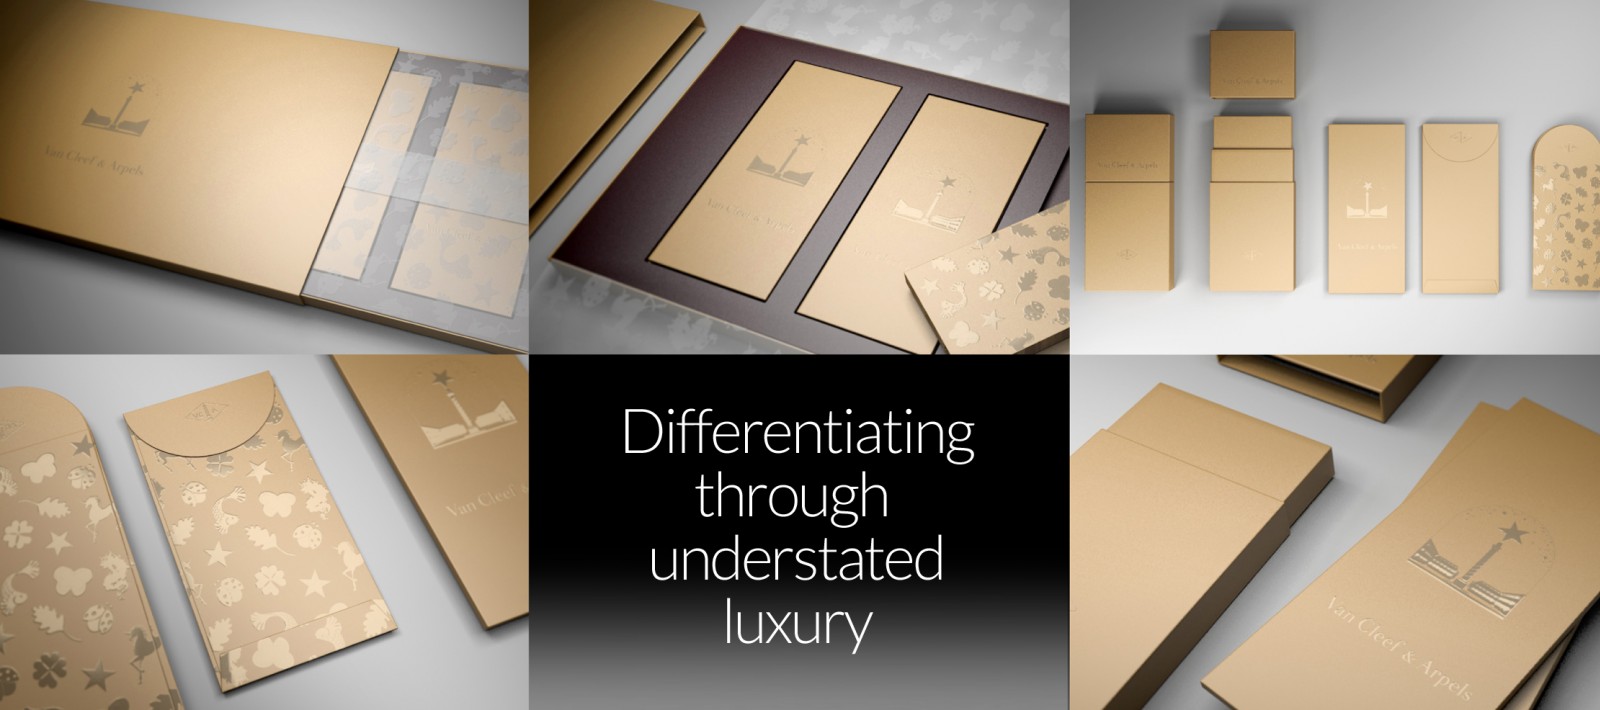 Luxury packaging design for Van Cleef & Arpels